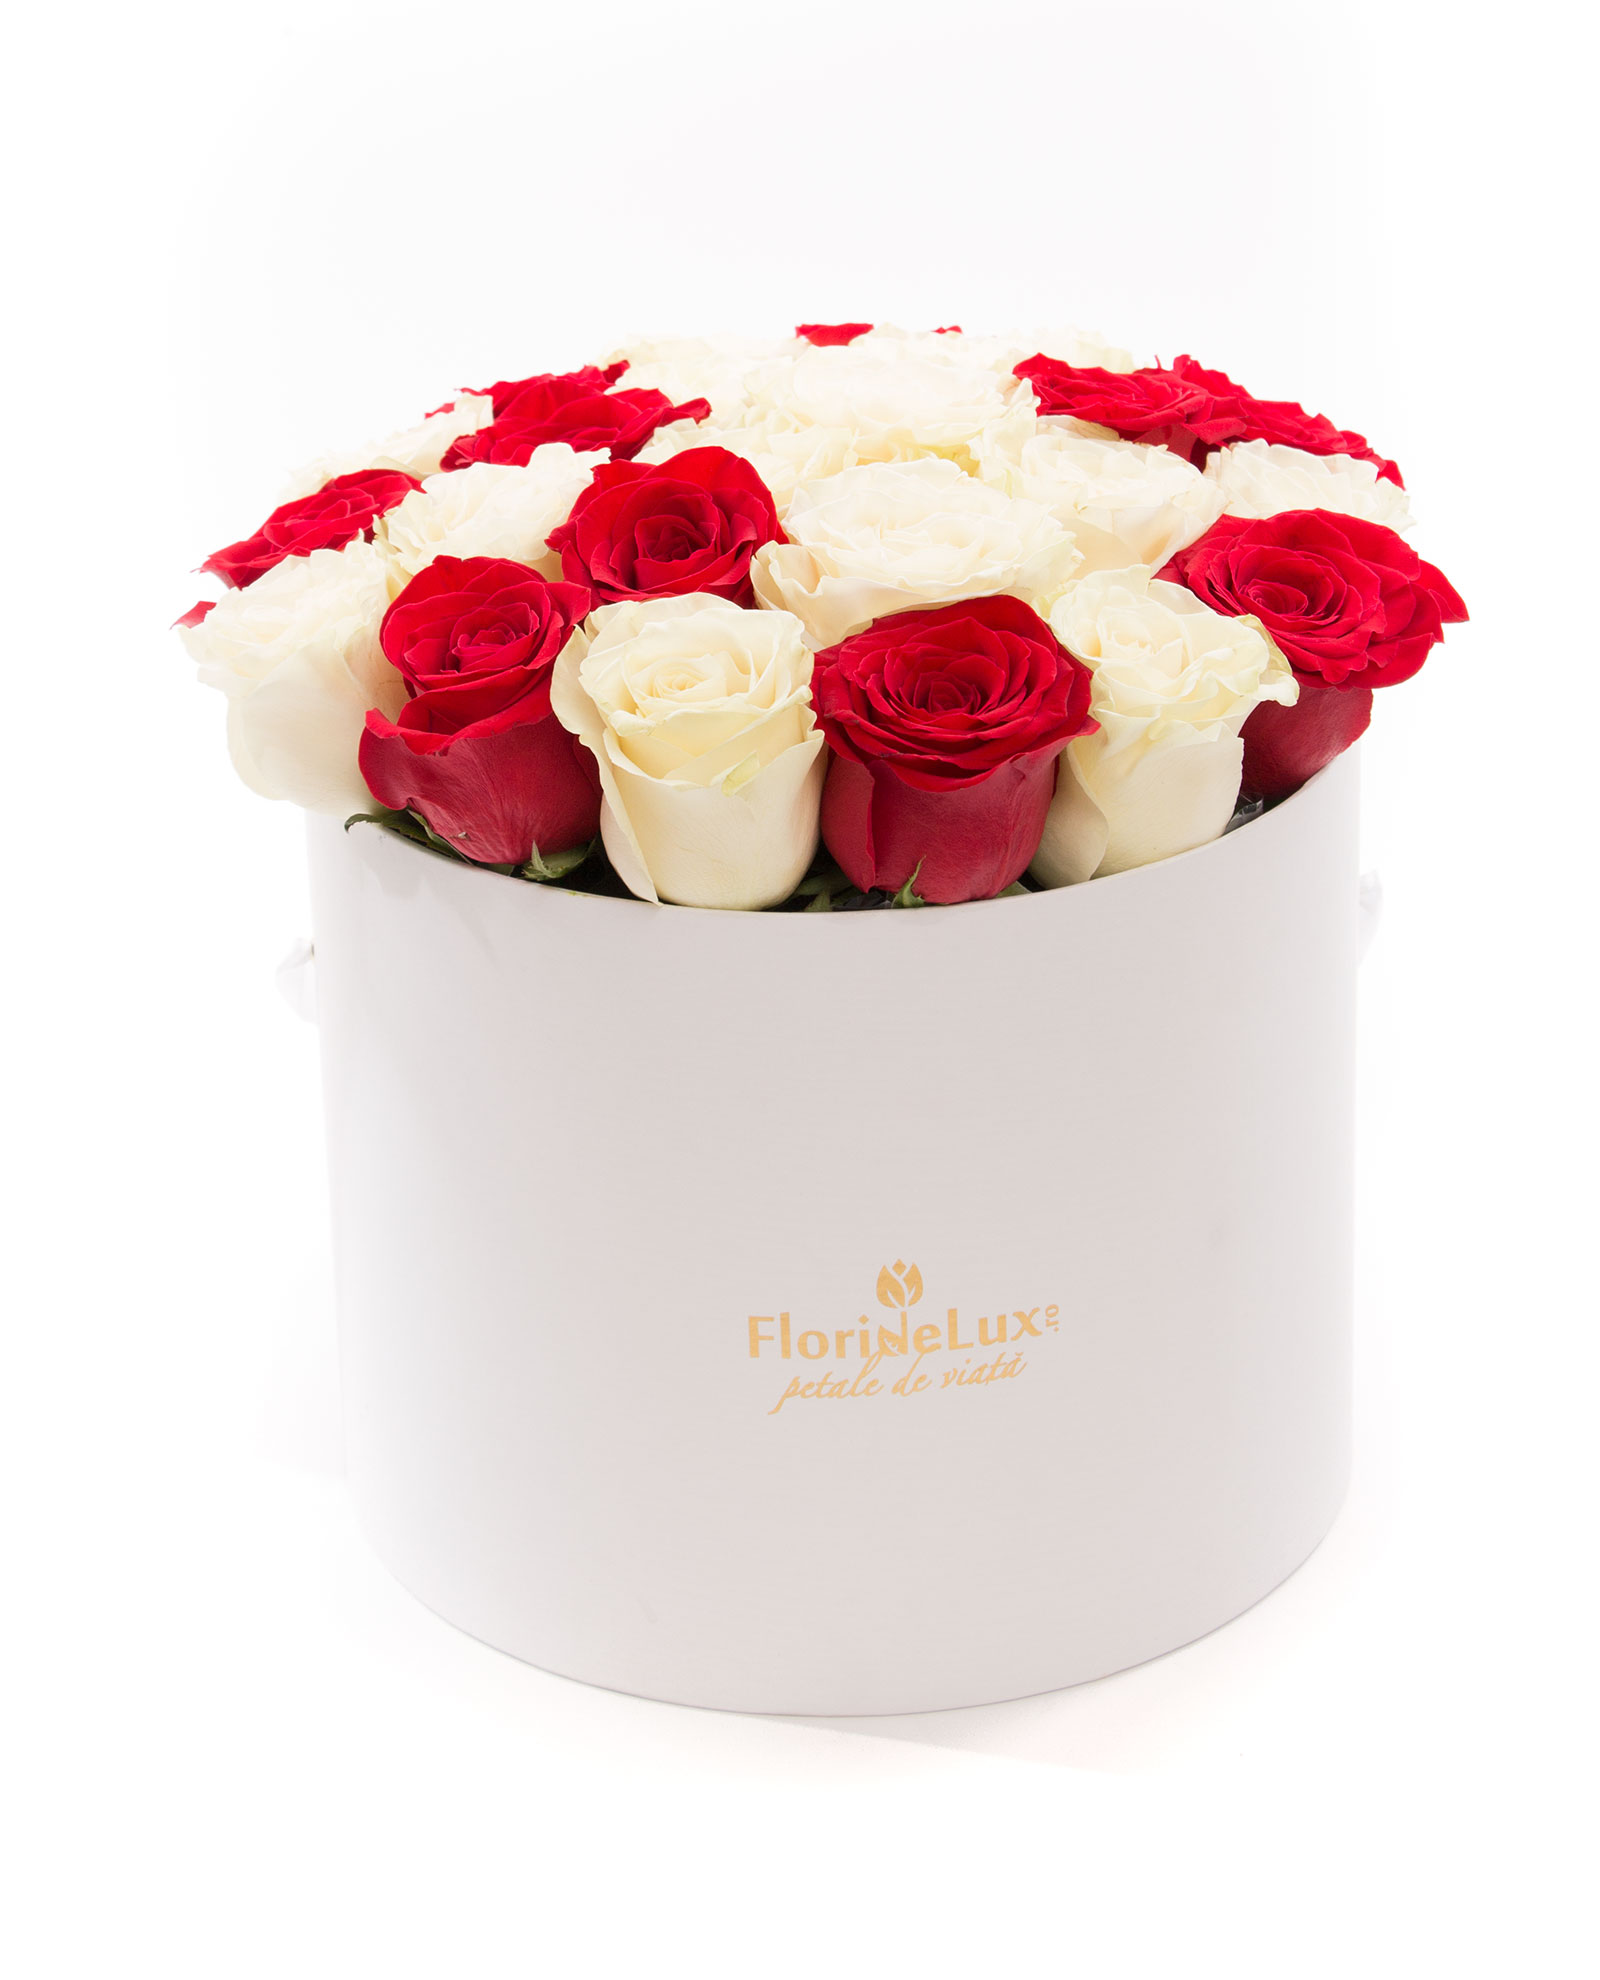 Cutie cu 23 trandafiri albi, rosii si vin Calem